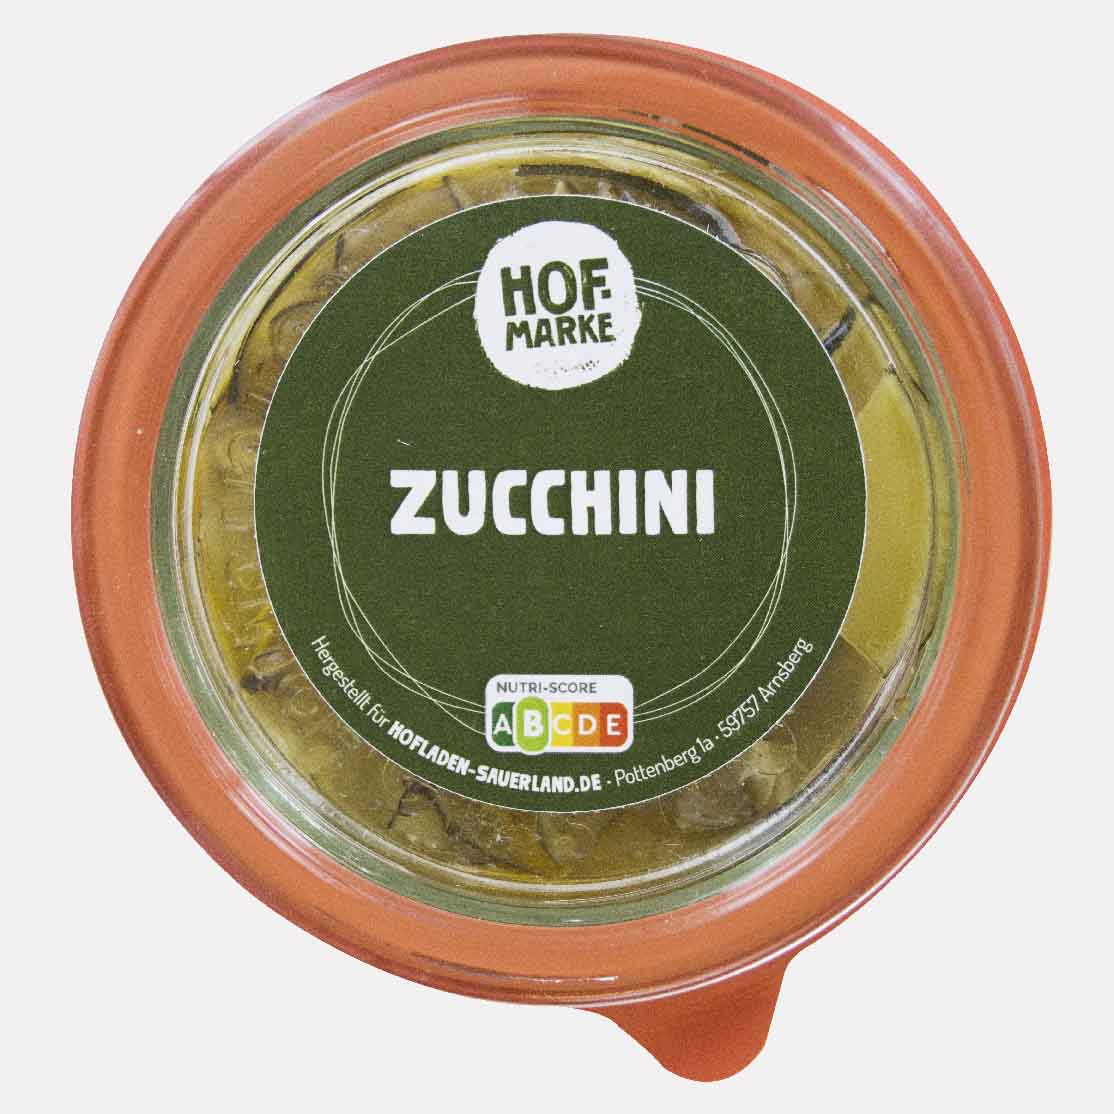 eingelegte Zucchini von unserer Hofmarke-zoom